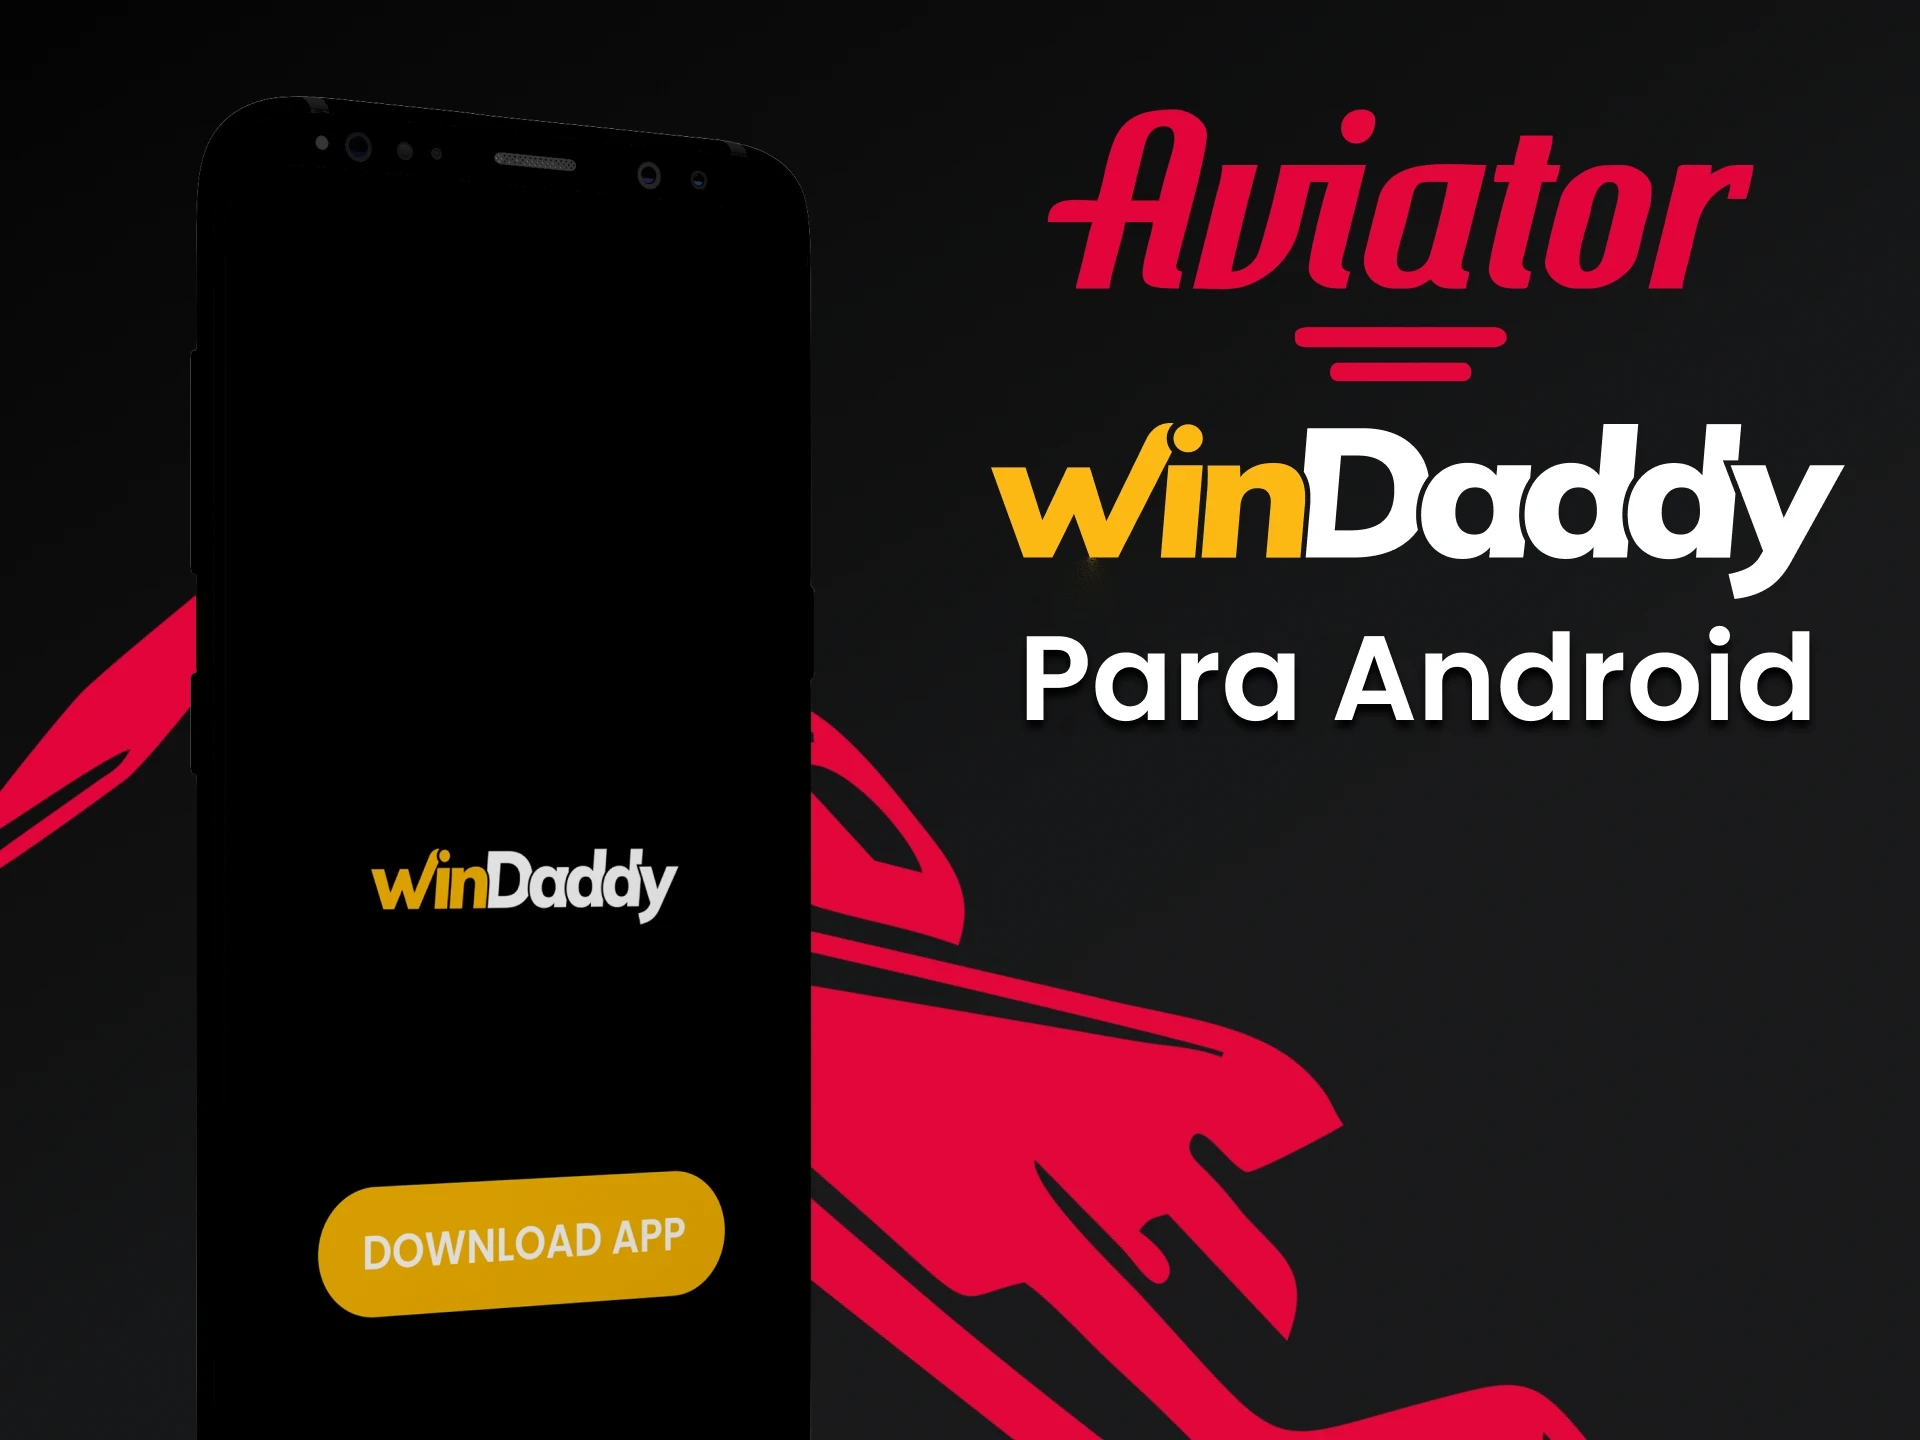 Faça o download do aplicativo WinDaddy para Android para jogar o Aviator.